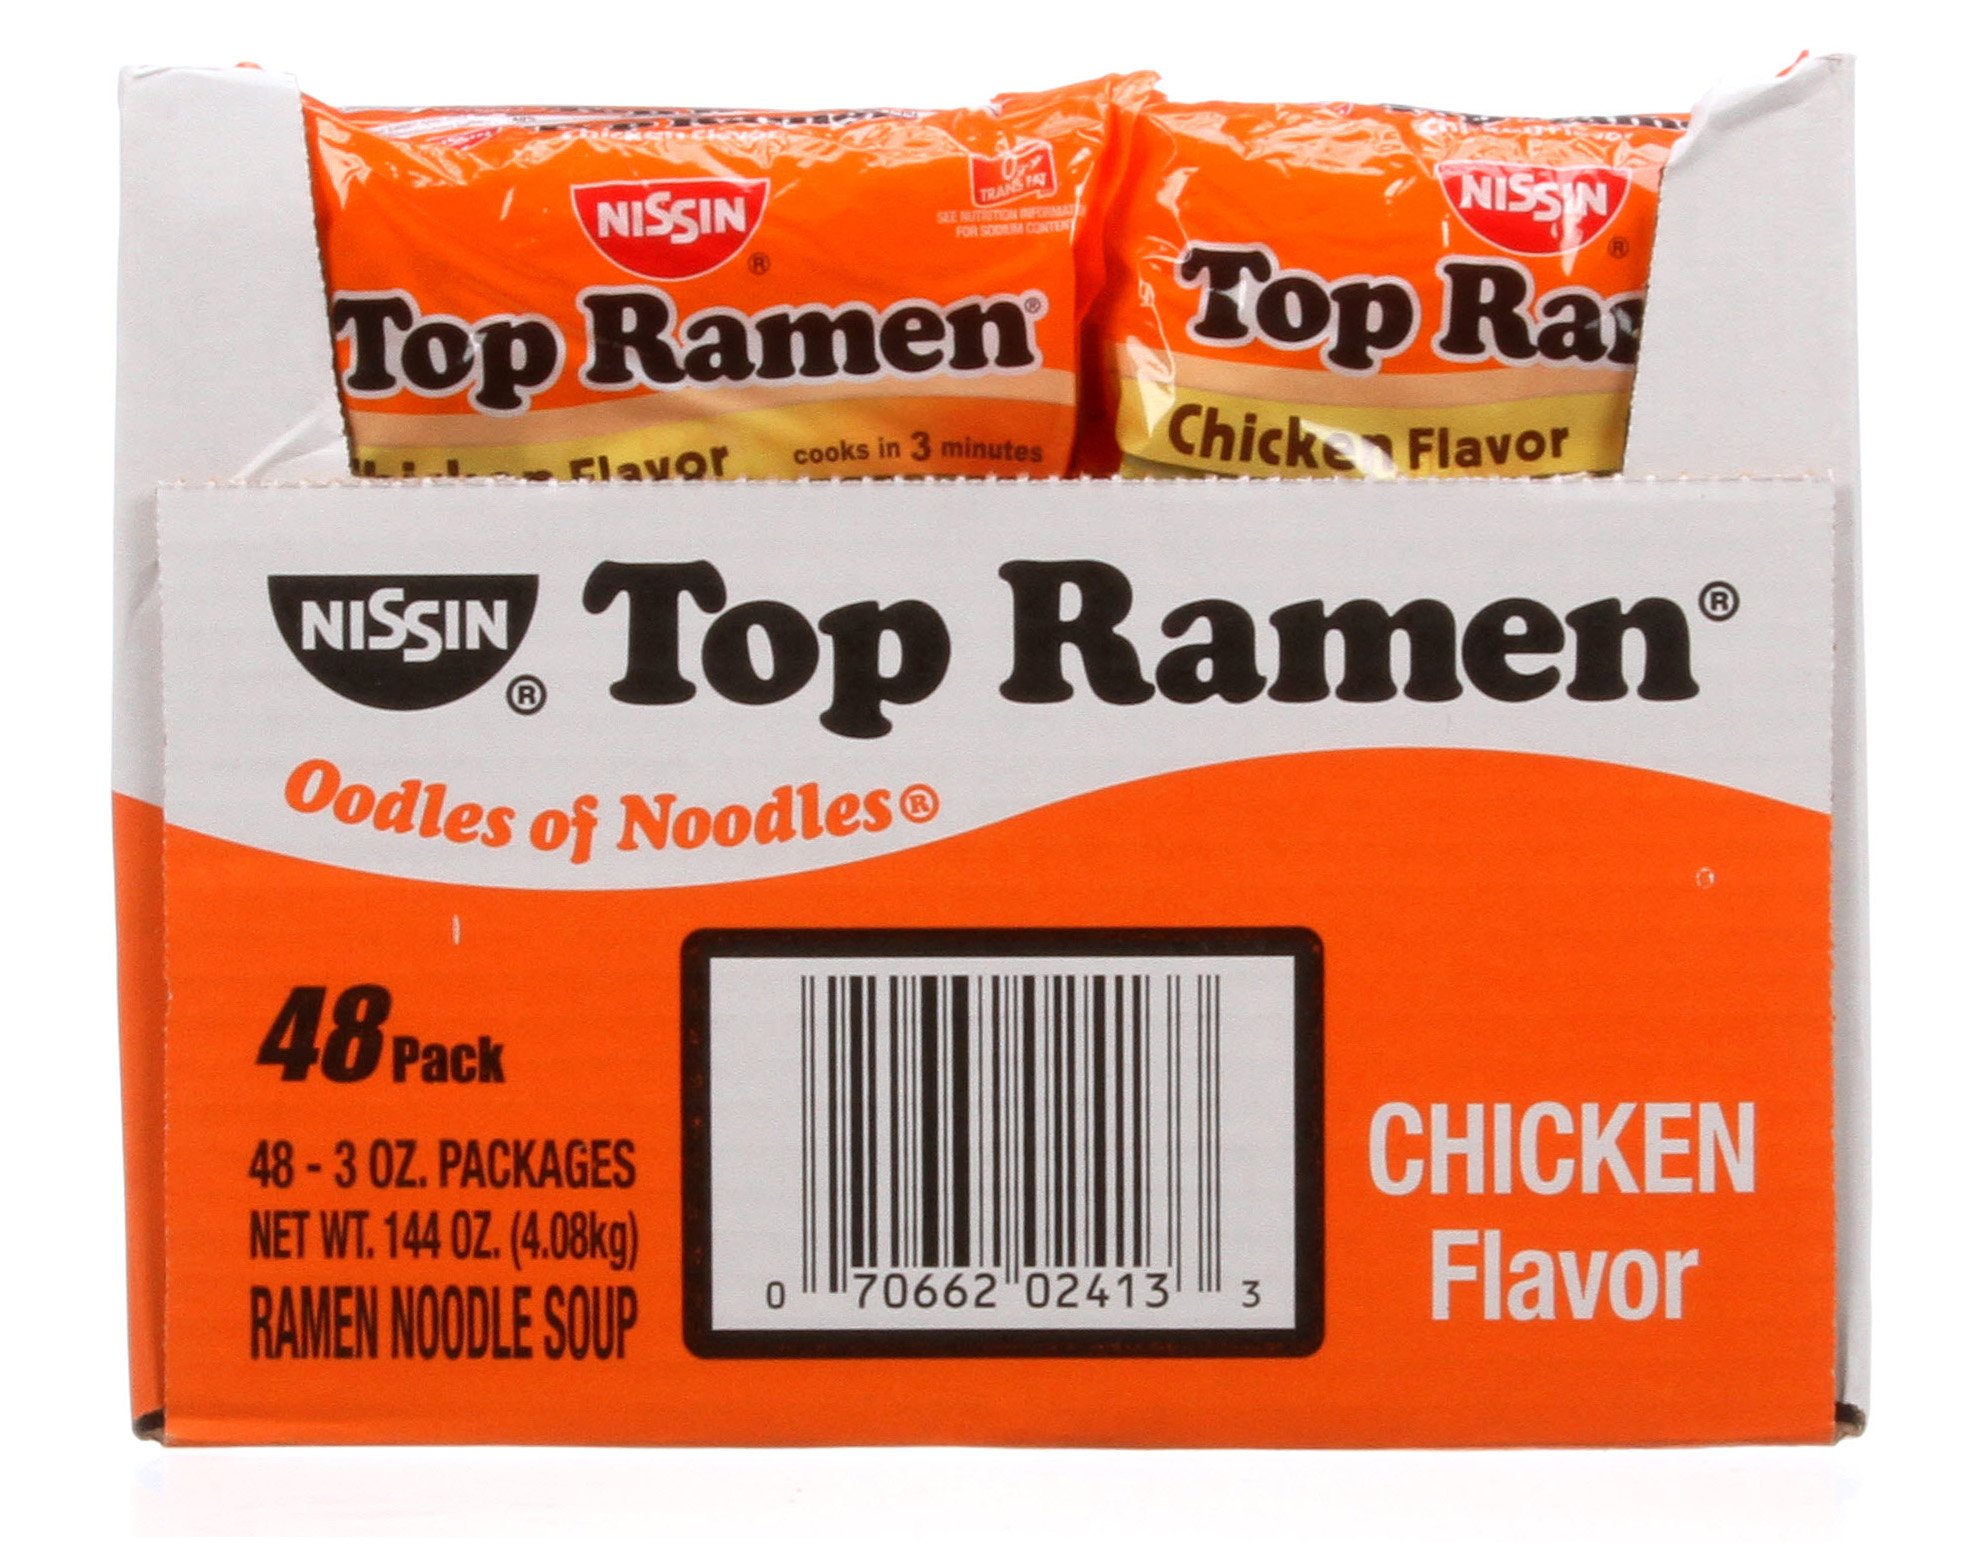 Nissin Top Ramen Chicken Flavor Noodle Soup, 48 pk./3 oz.